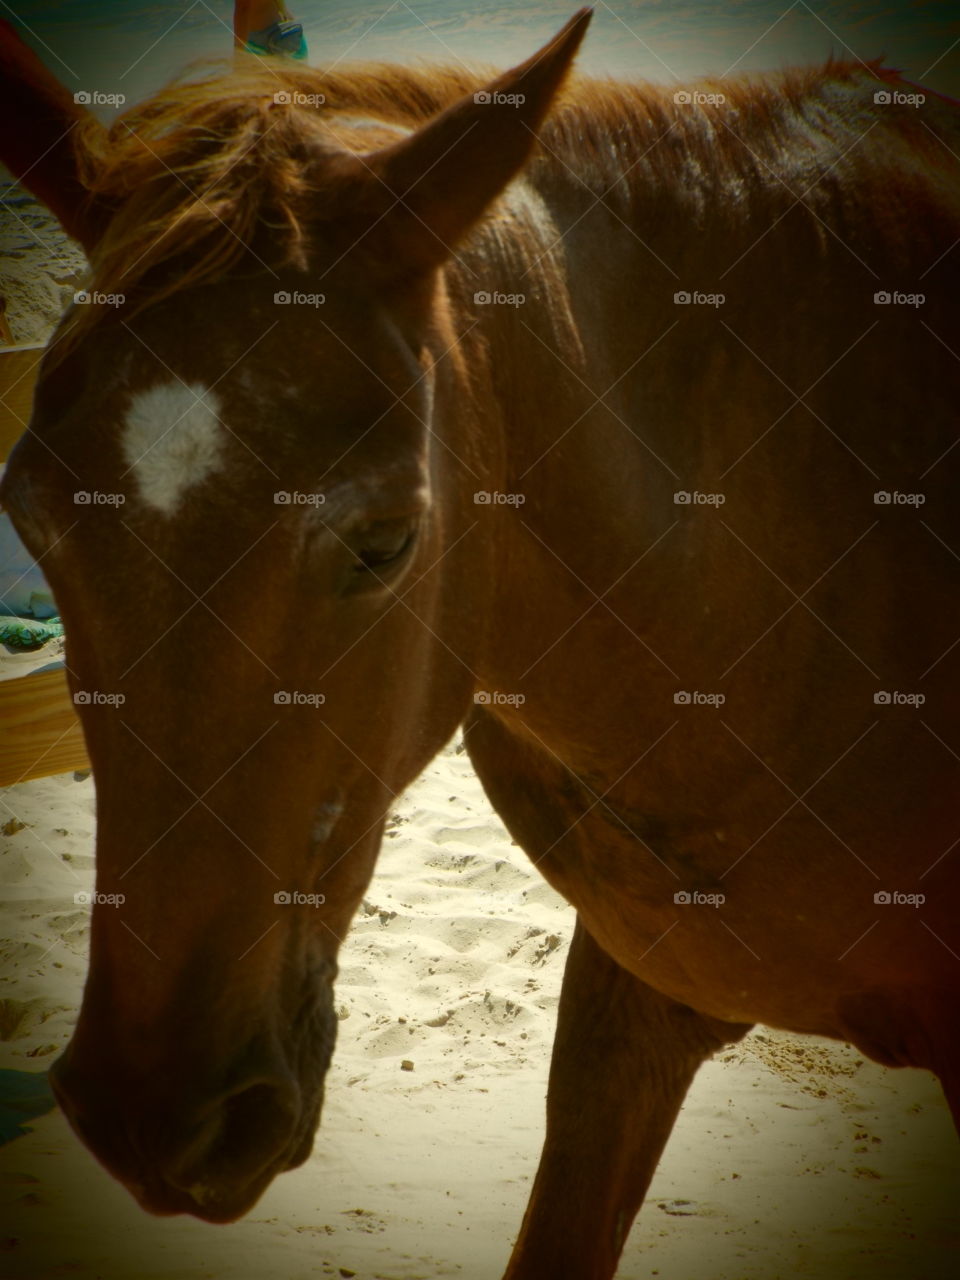 horse closeup